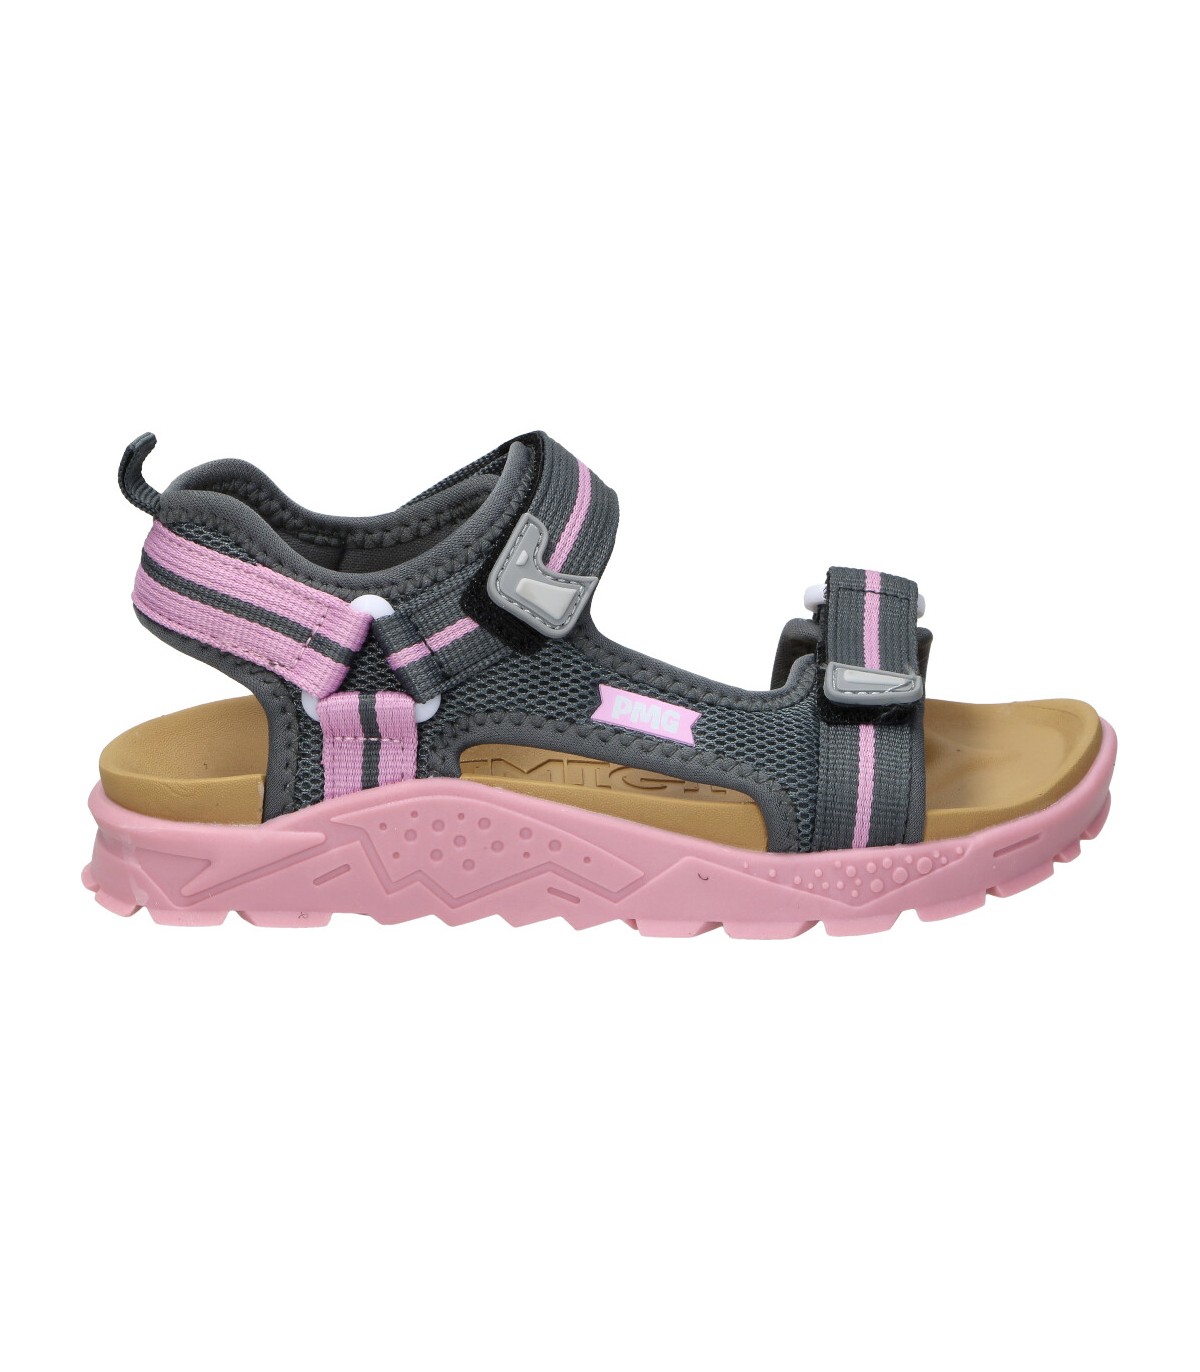 Sandalias para niño Primigi 39725 color rosa online en MEGACALZADO